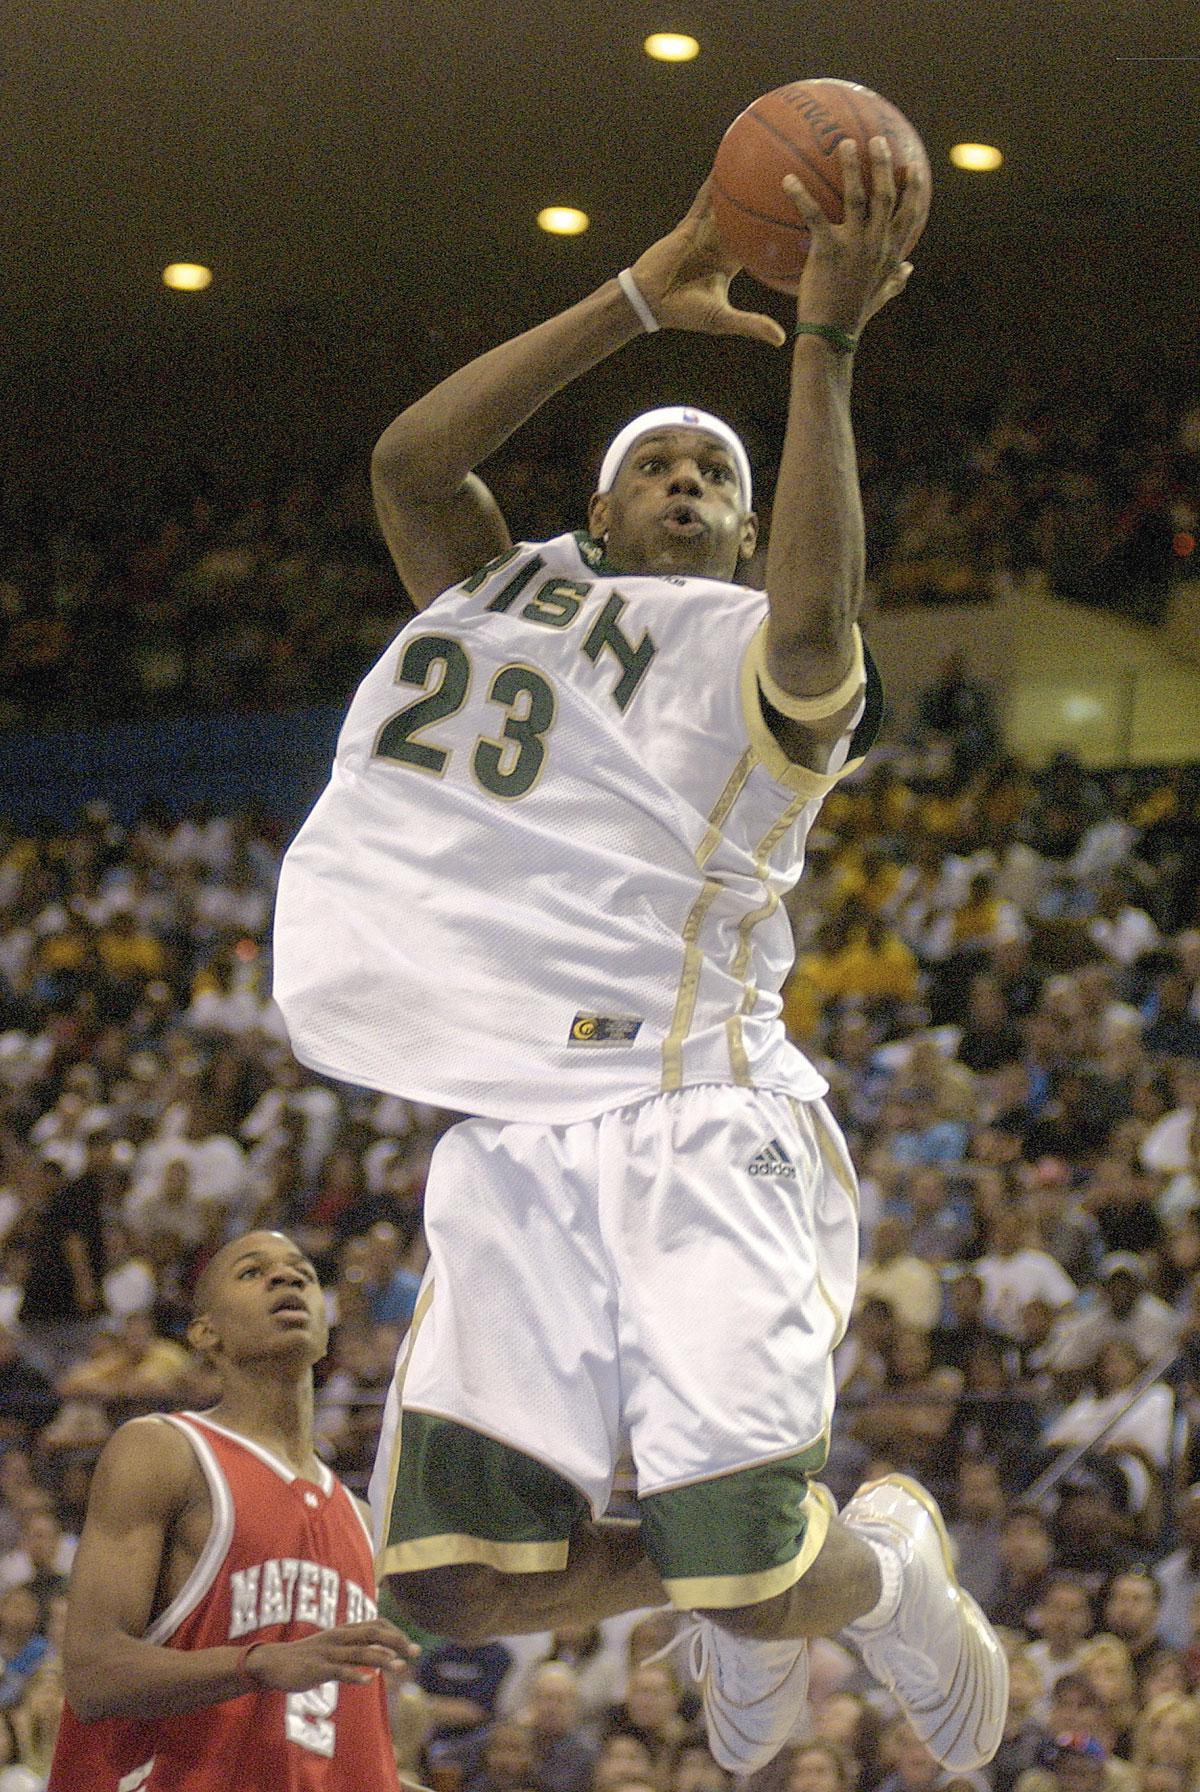 LeBron James was al een fenomeen toen hij voor zijn St. Vincent–St. Mary High School uitkwam. Sports Illustrated bestempelde hem op een beroemde cover als ‘The Chosen One’.